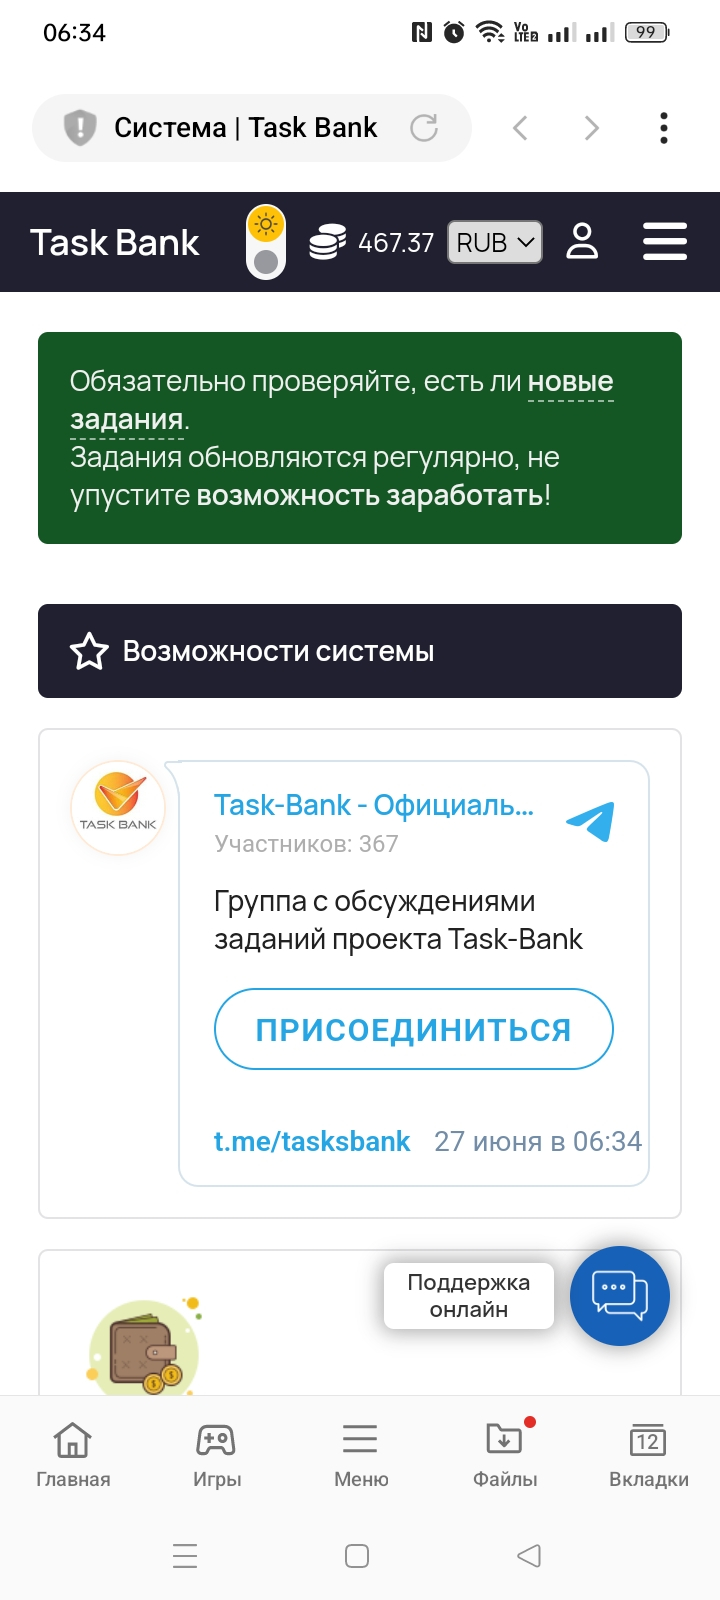 Task-Bank - Task-Bank отзыв